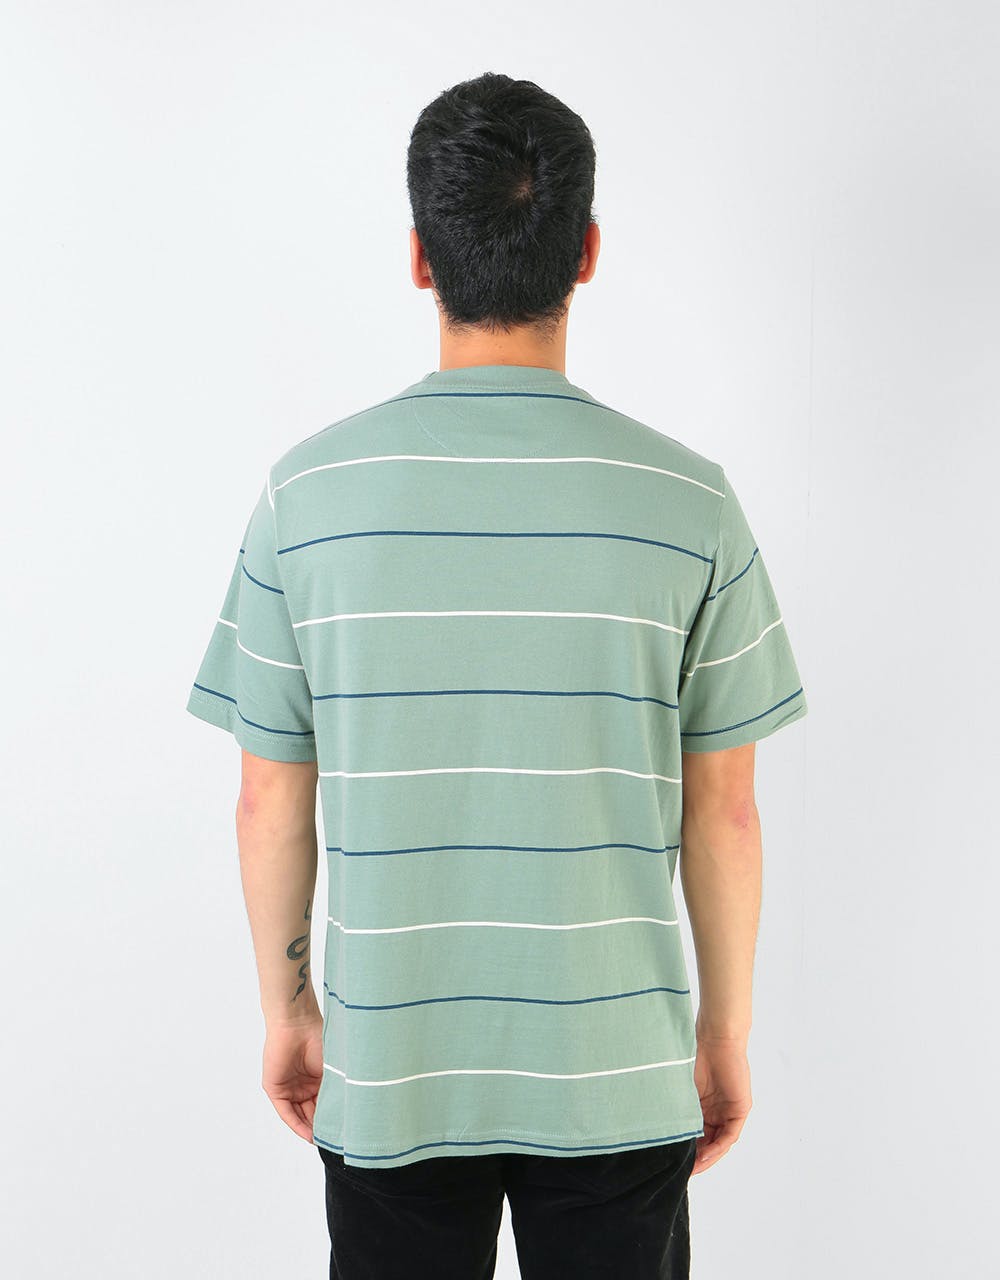 Primitive Slauson S/S Knit T-Shirt - Pale Olive